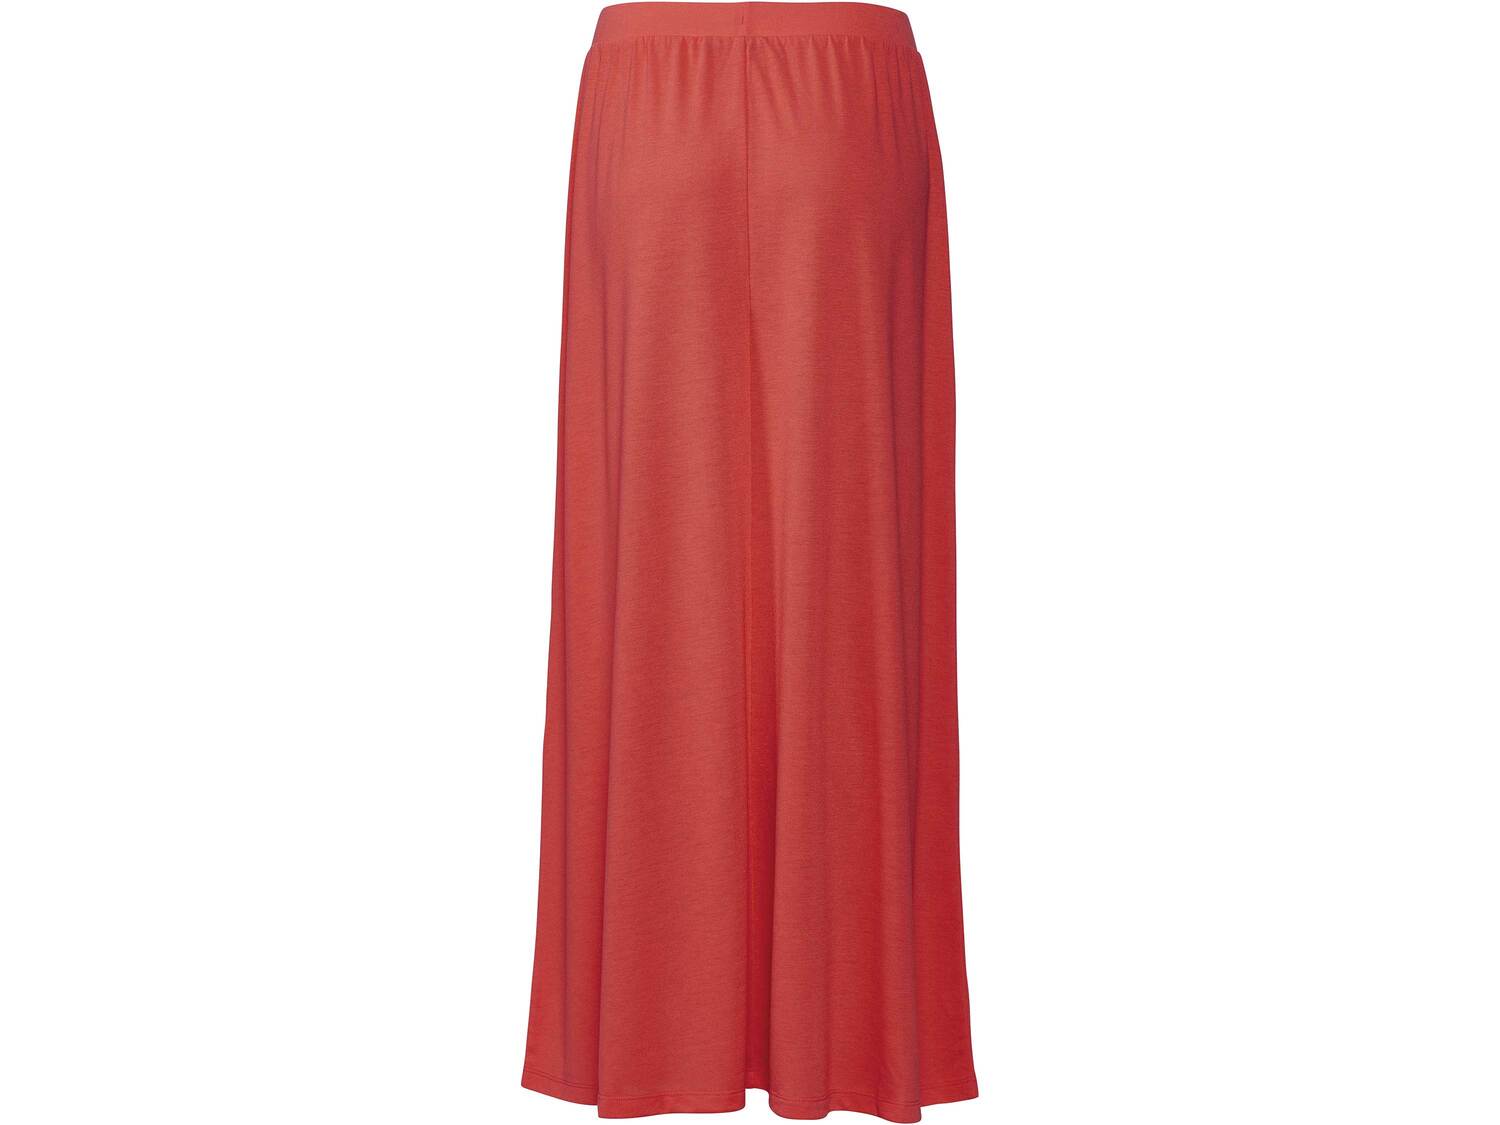 Spódnica damska z wiskozą Esmara, cena 29,99 PLN 
3 kolory 
- rozmiary: XS-L*
- ...